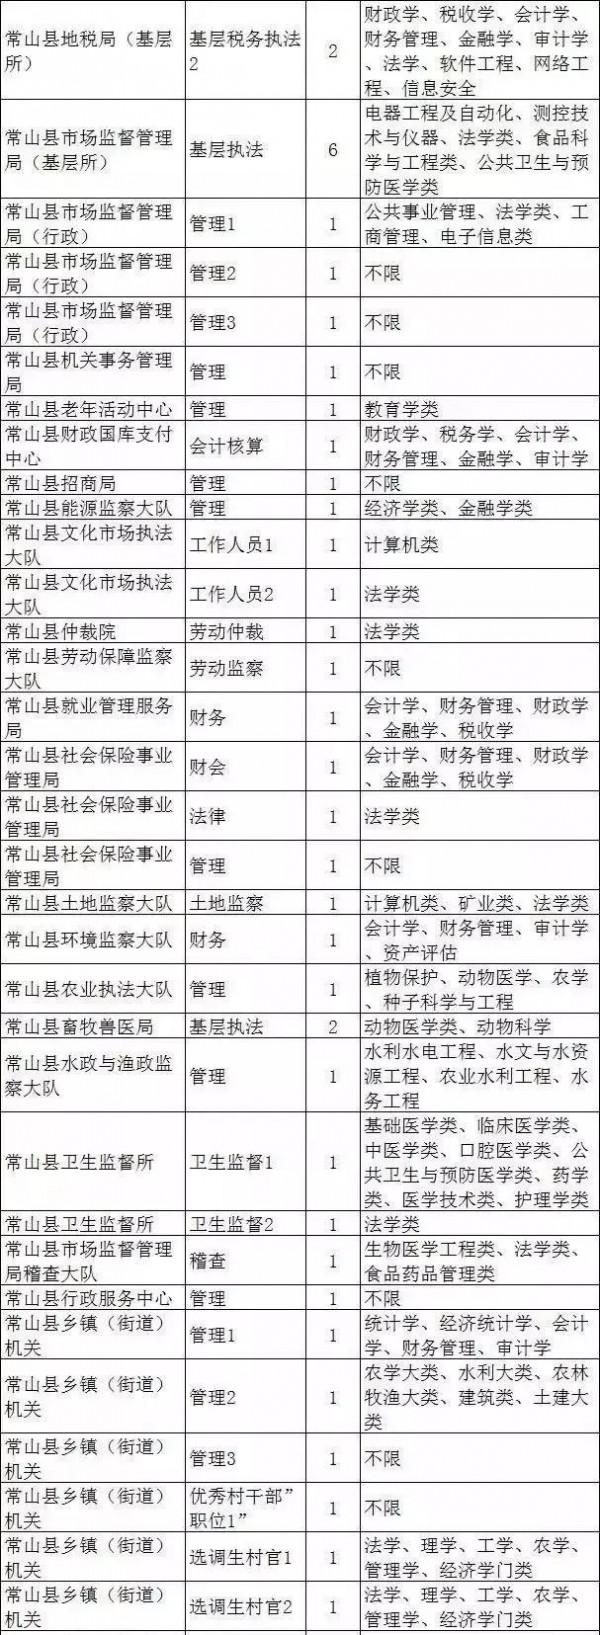 浙江劳红武最新职位 2017年浙江公务员报名今日最后一天 26个职位无人问津